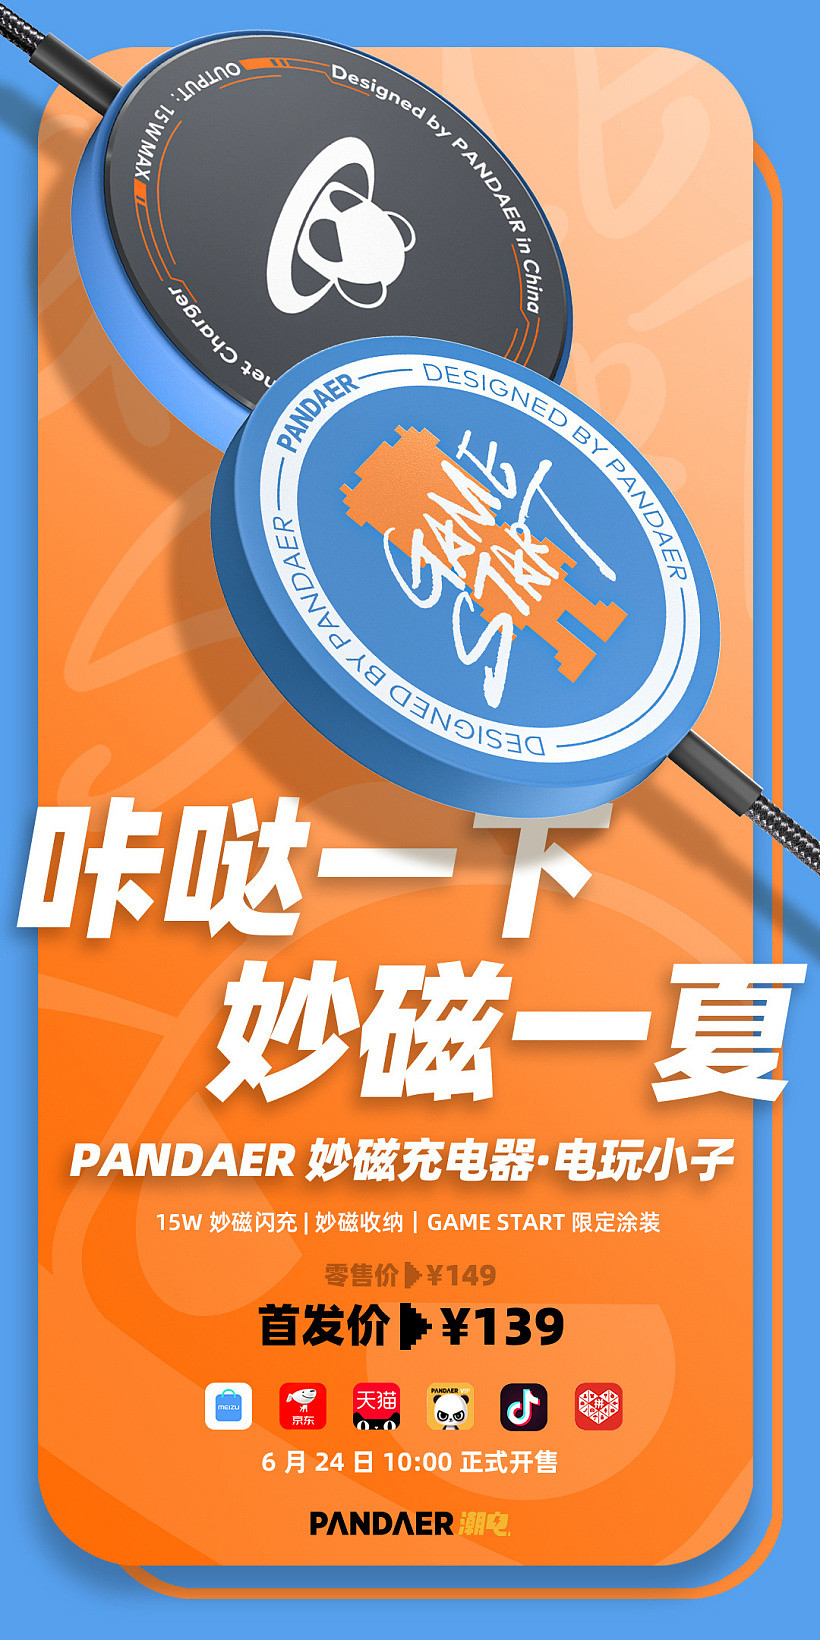 魅族 PANDAER 15W 妙磁充电器全新涂装电玩小子正式开售，首发价 139 元 - 1